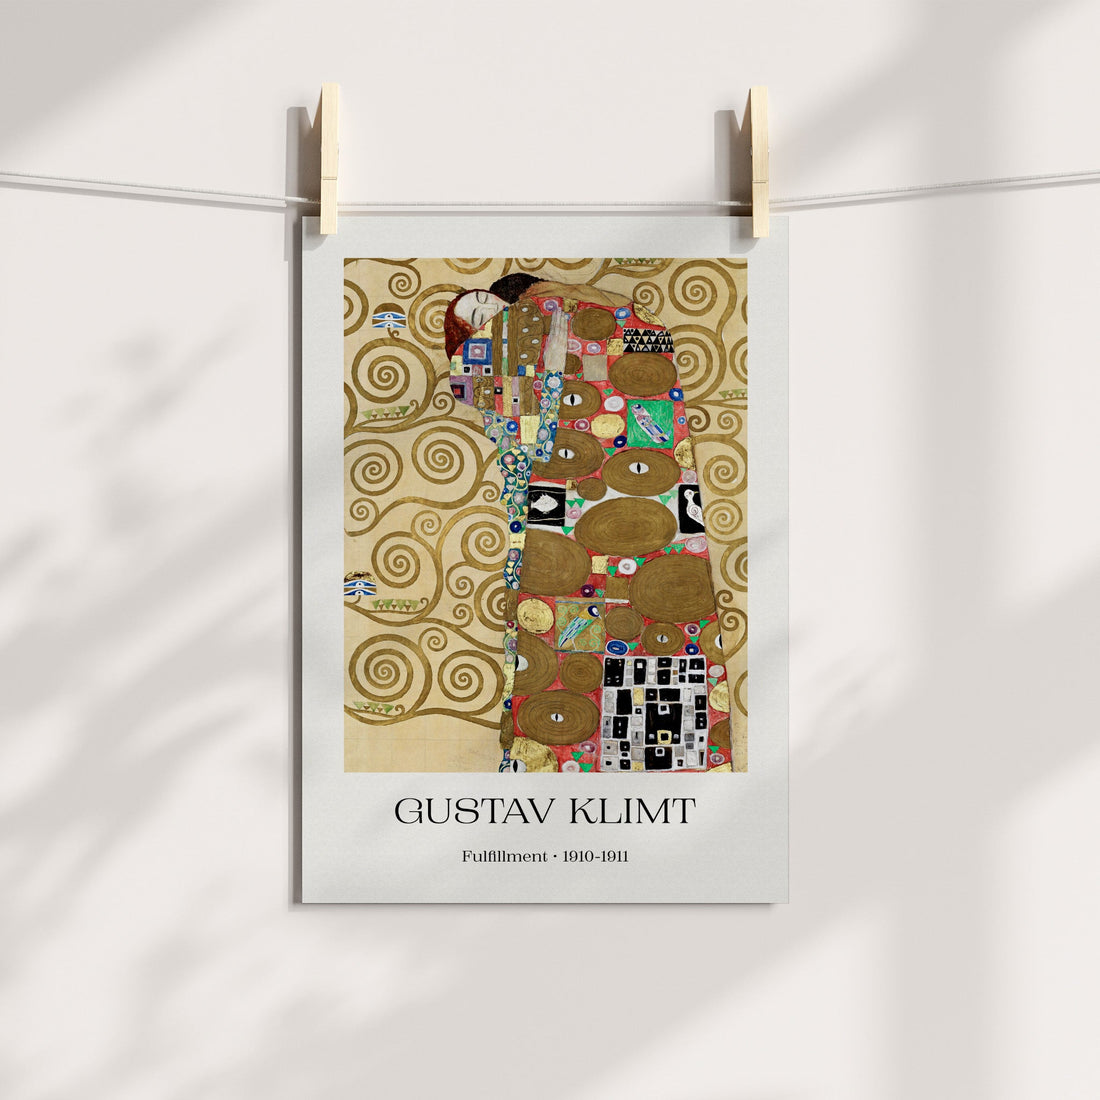 Fulfillment by Gustav Klimt Gallery Printable Art